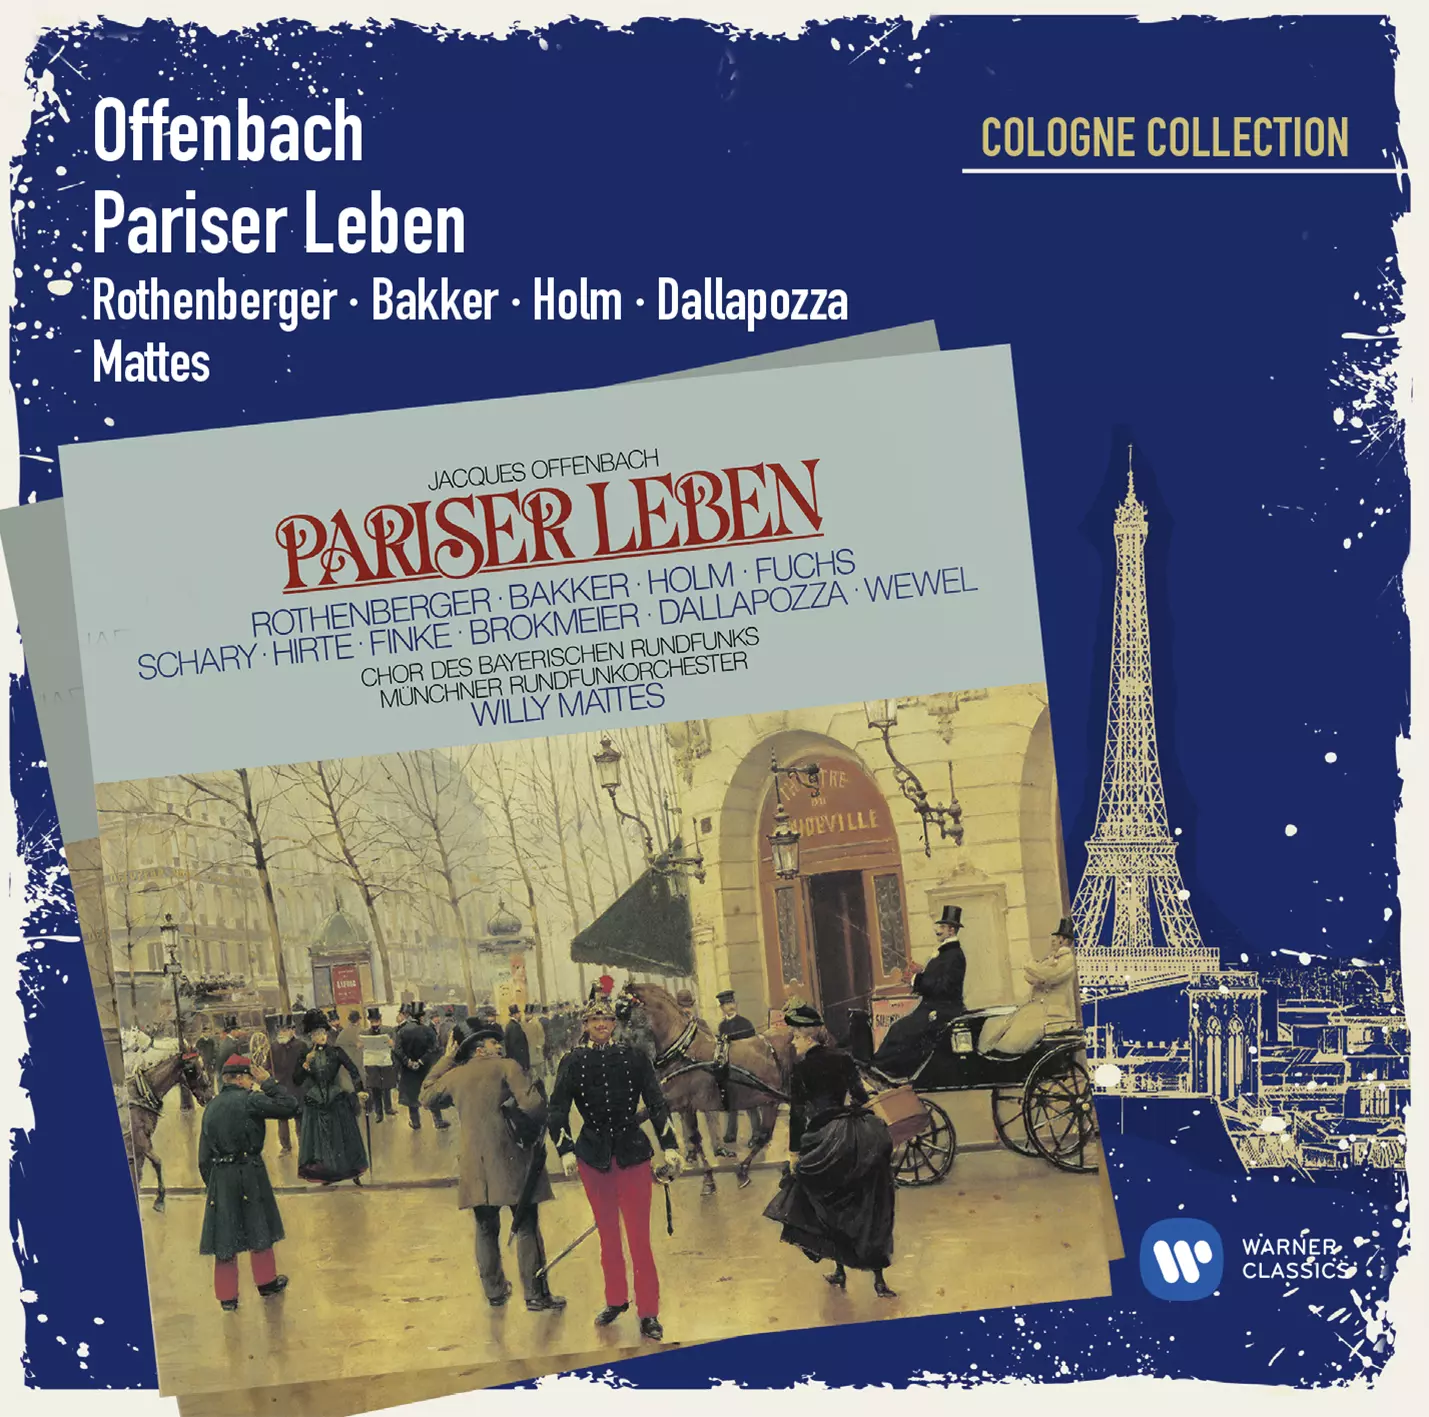 Offenbach La Vie Parisienne/Pariser Leben (Cologne Collection)